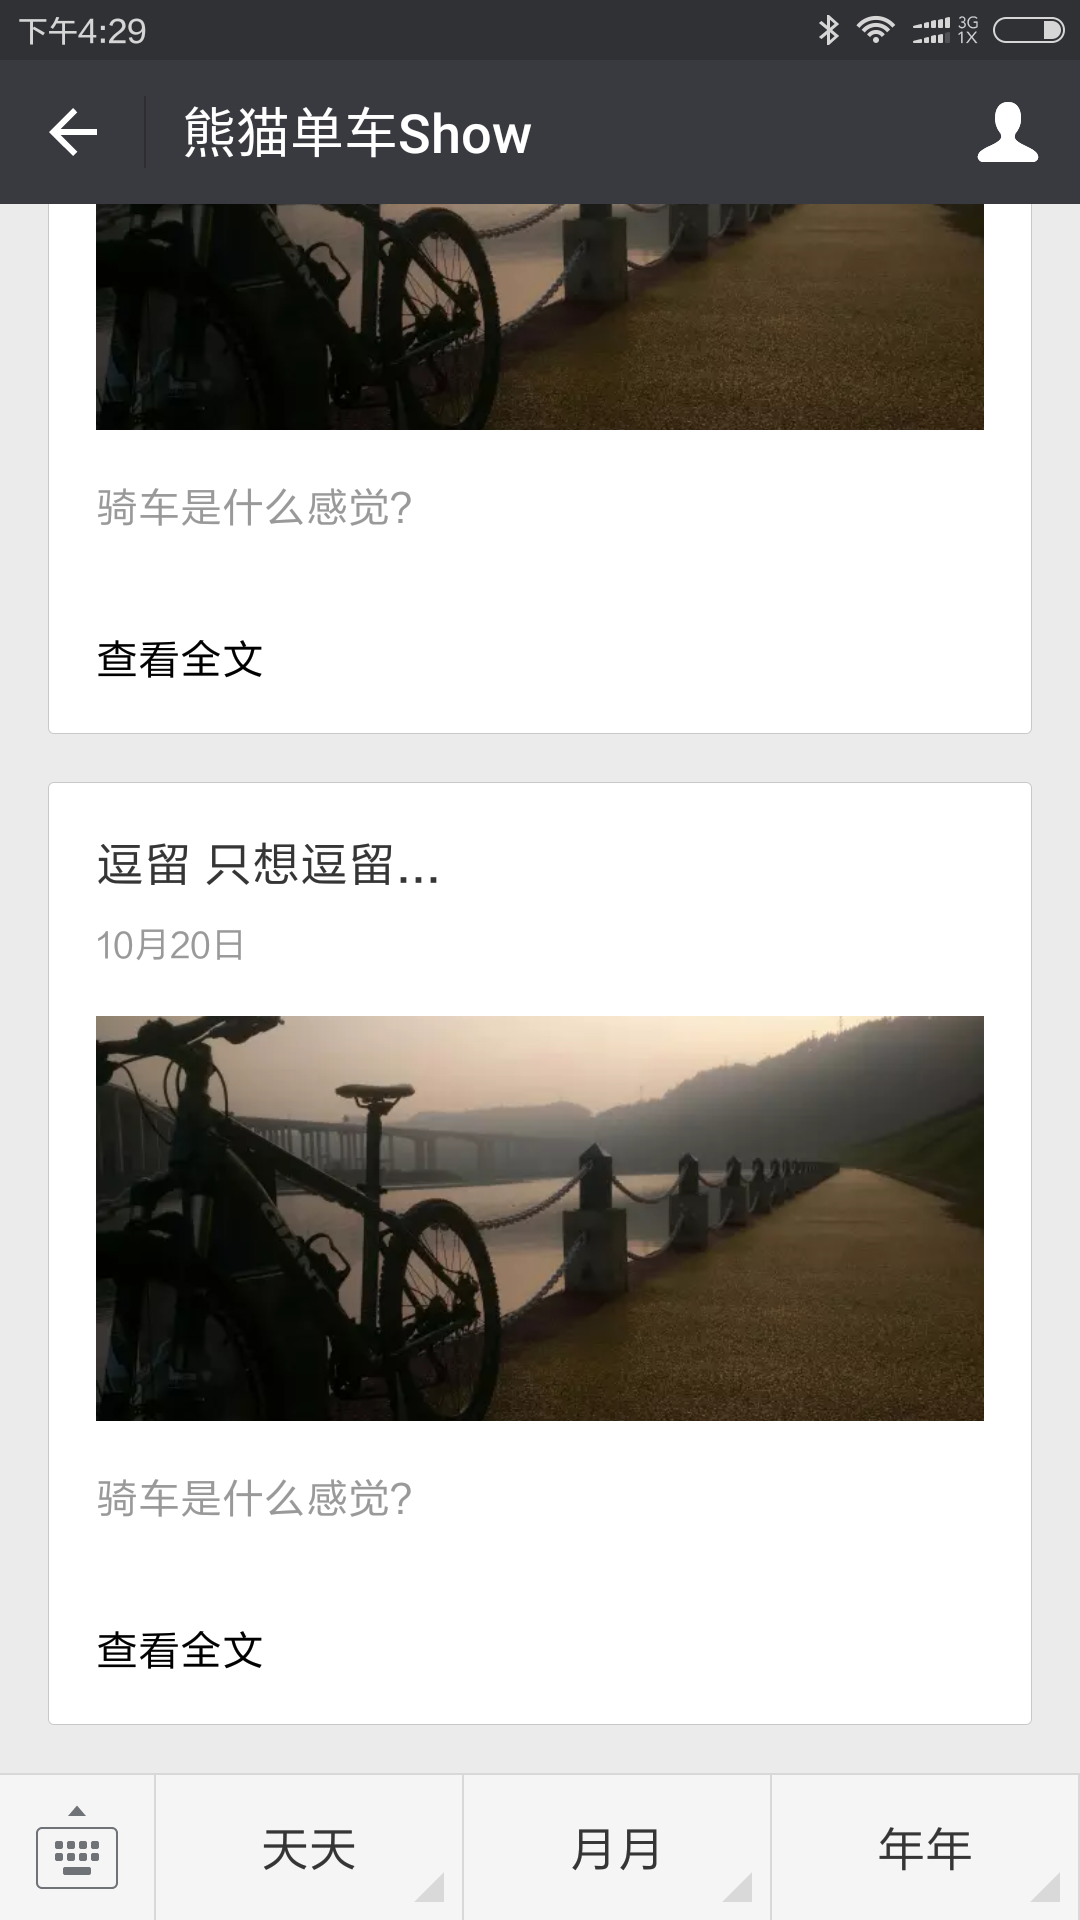 Screenshot_2016-10-20-16-29-15_com.tencent.mm.png